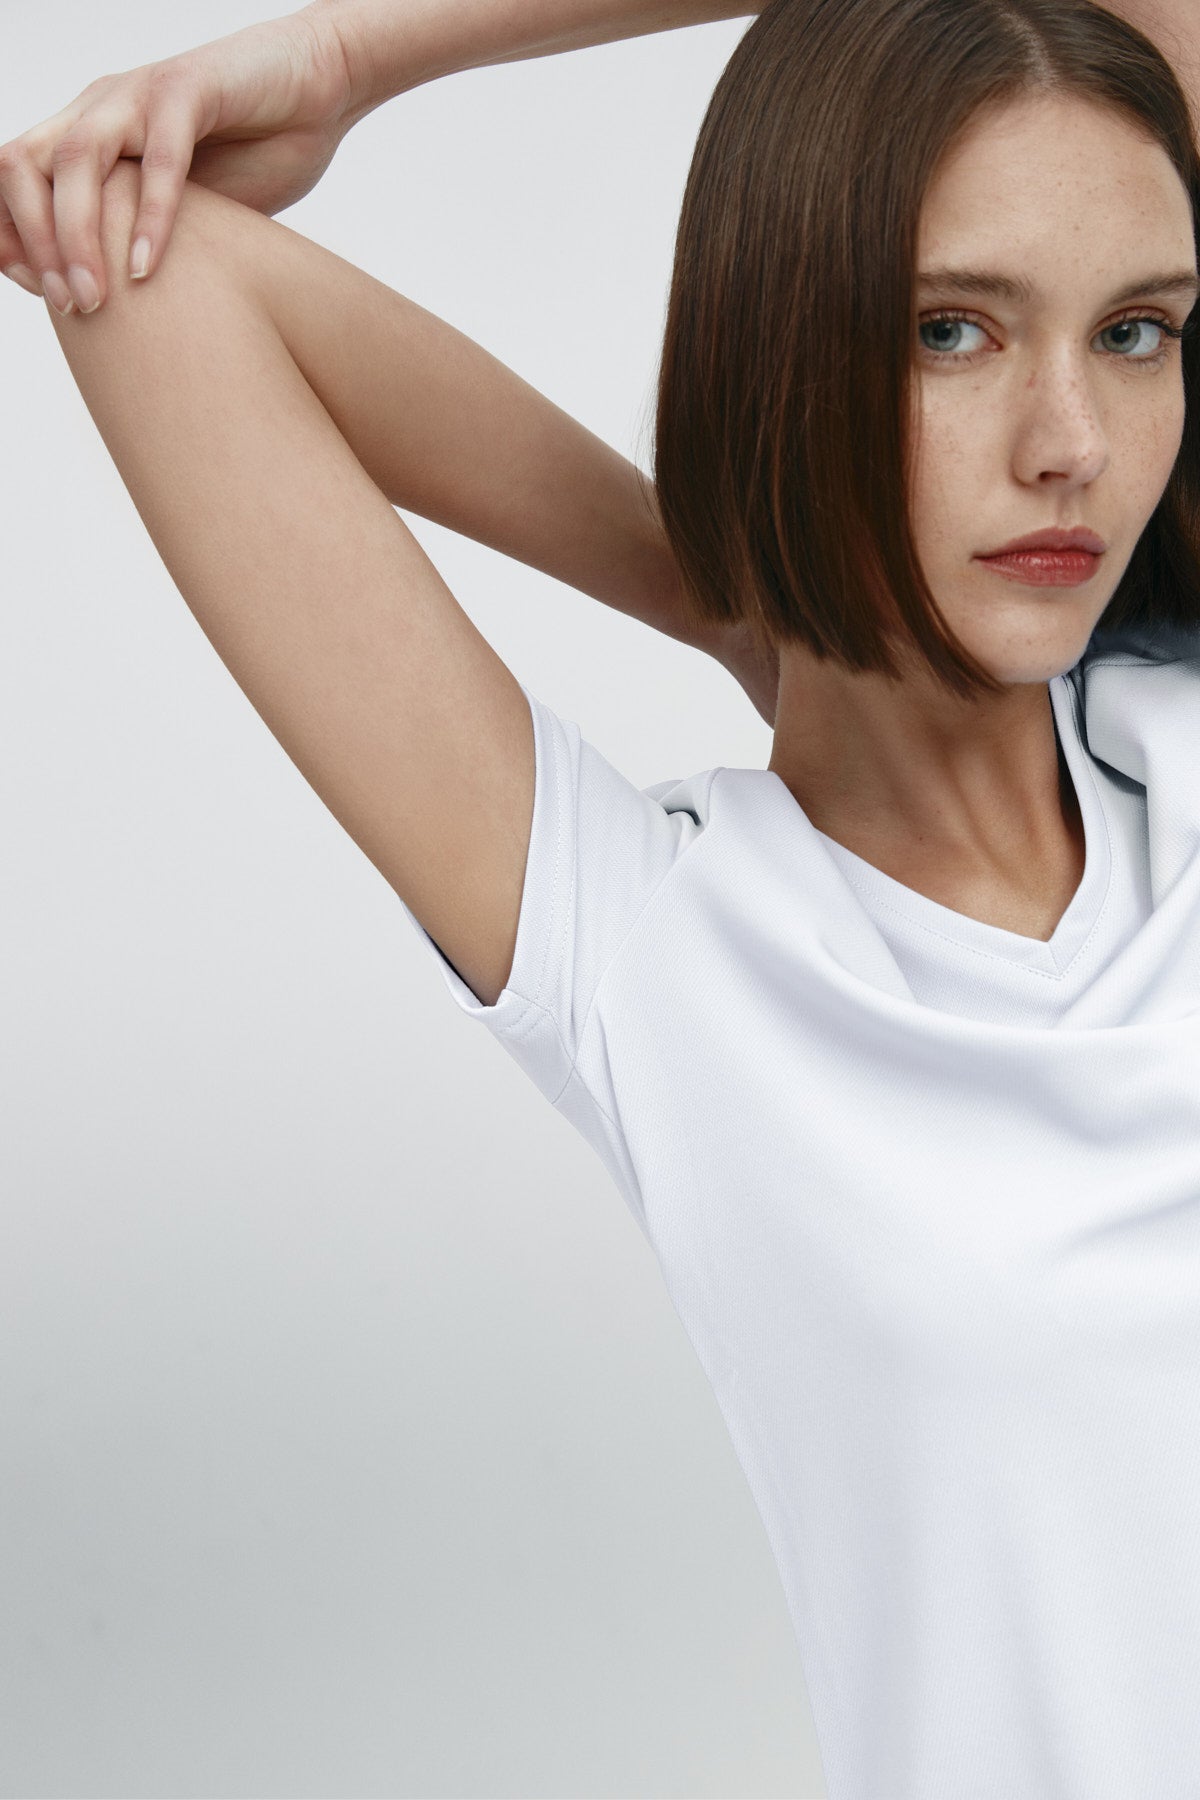 Top para mujer sin mangas con escote pico color blanco, básico .Foto flexibilidad